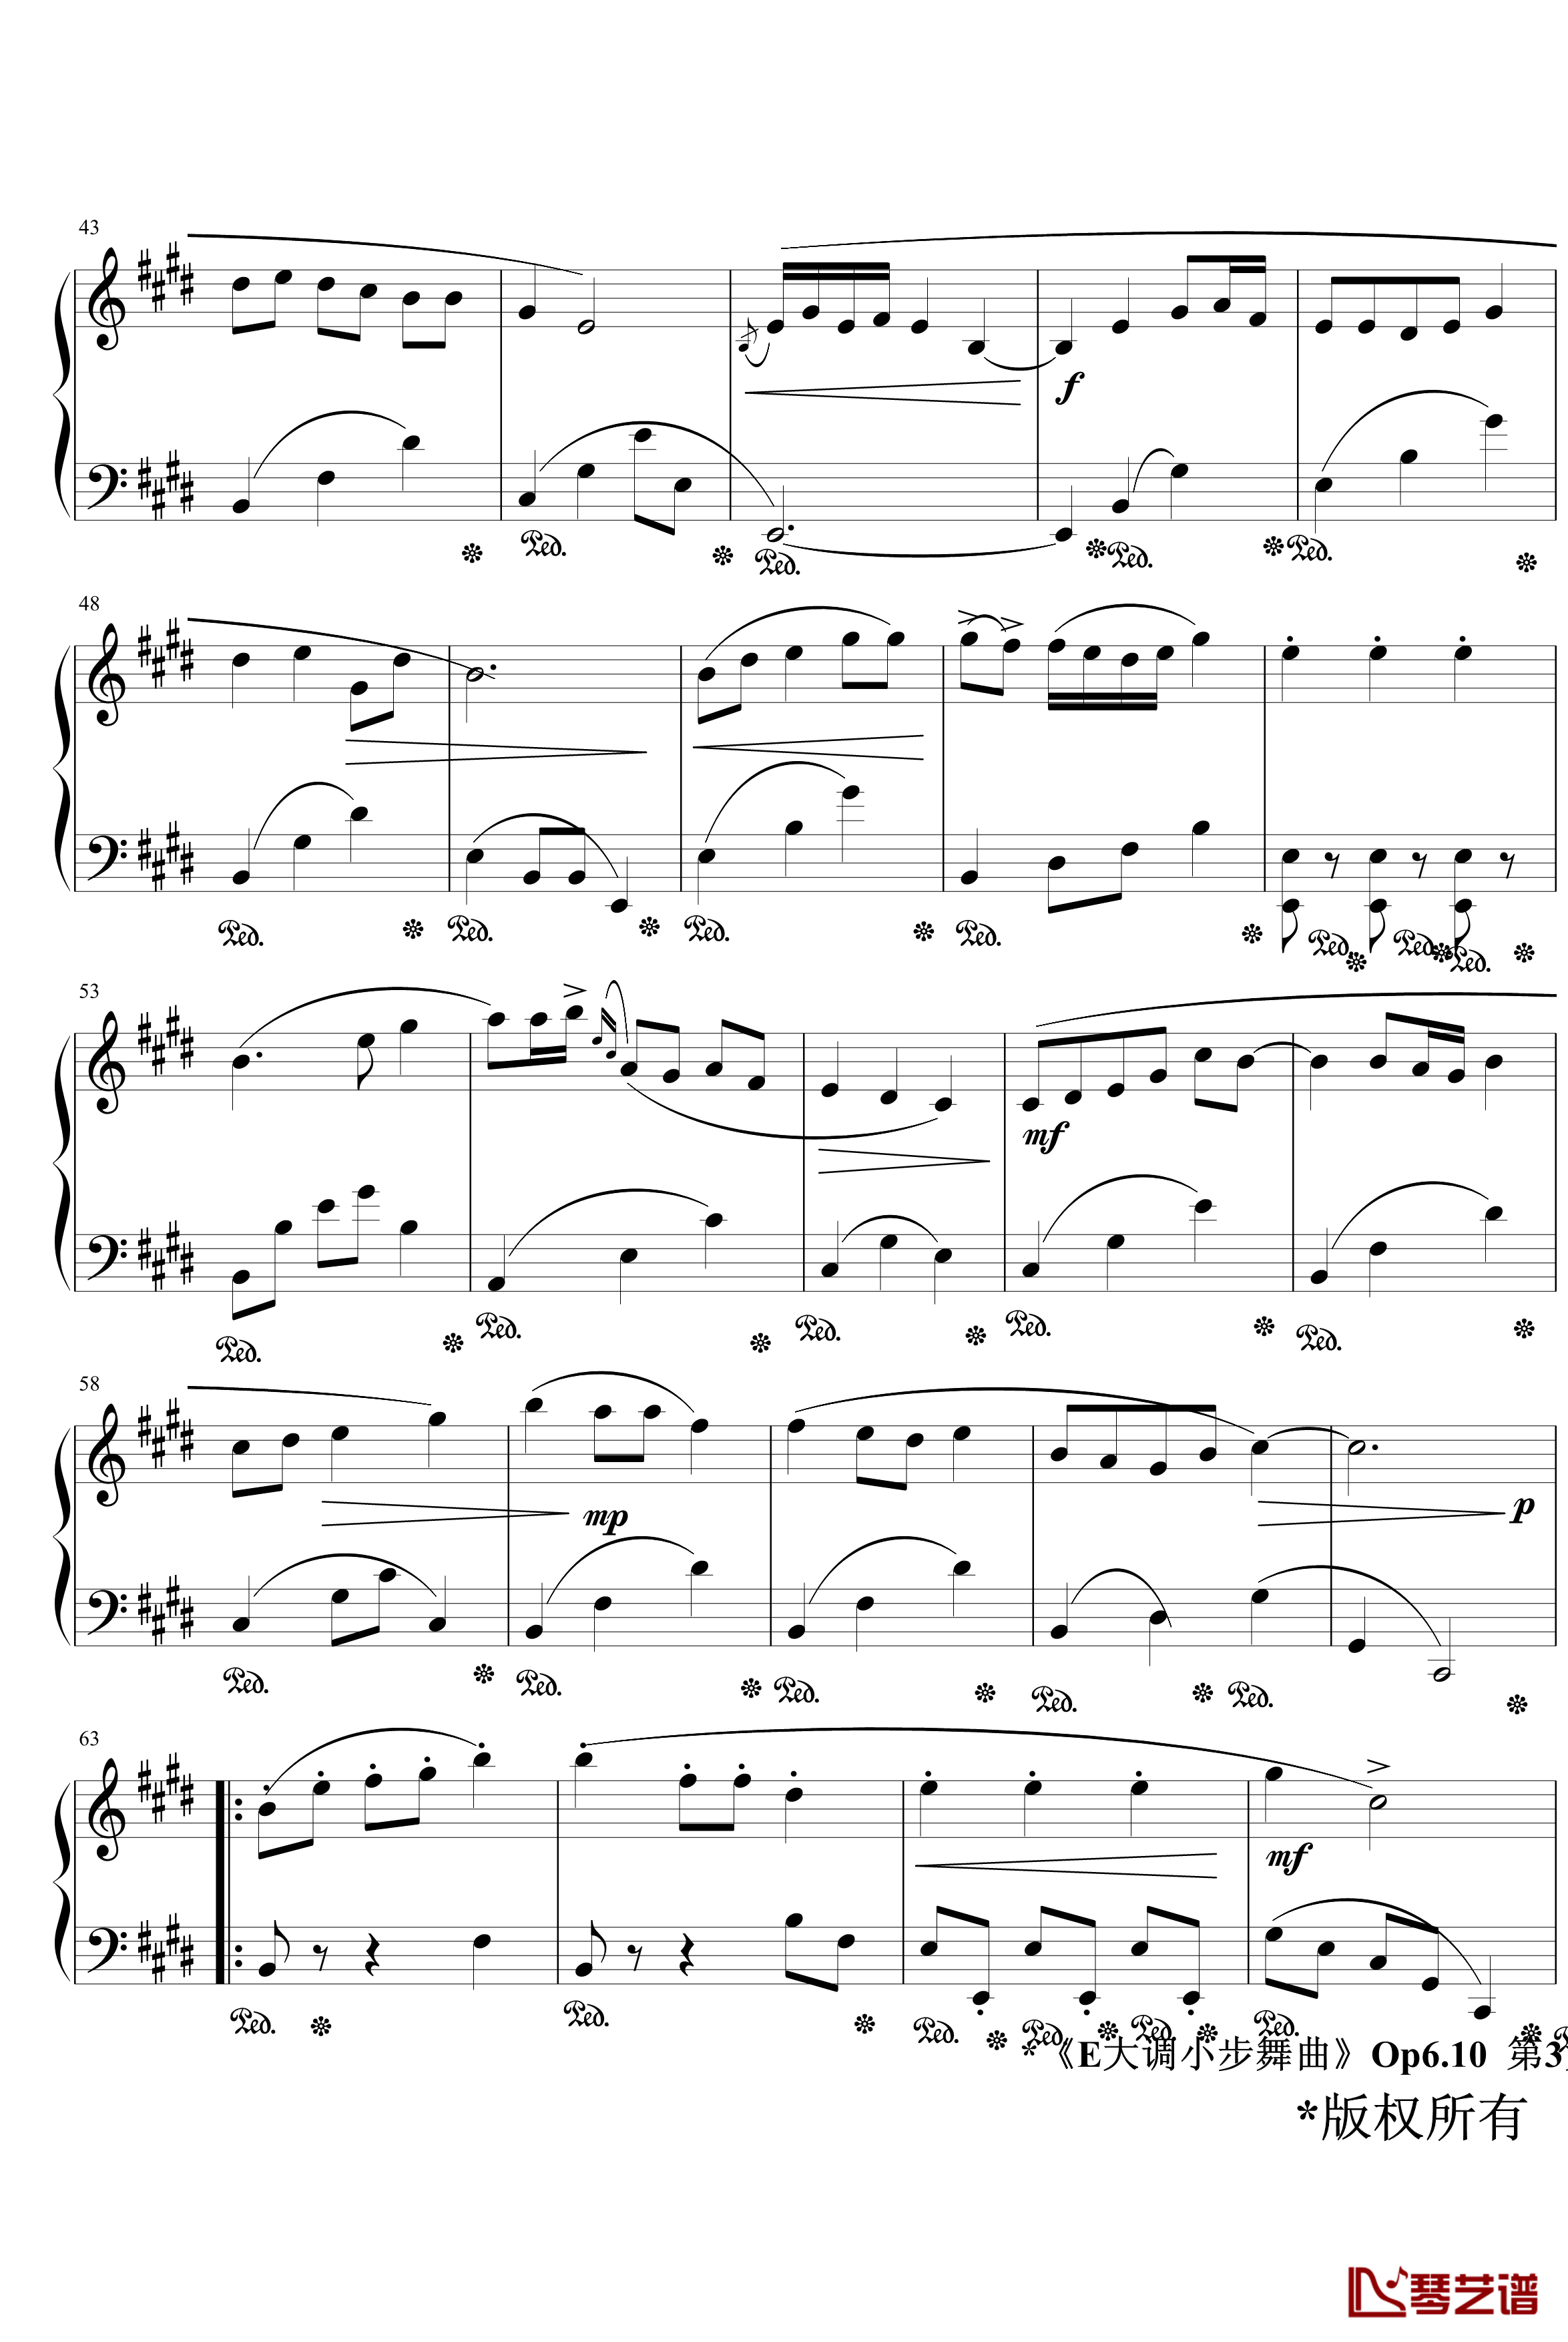 E大调小步舞曲Op6.10钢琴谱-jerry57433